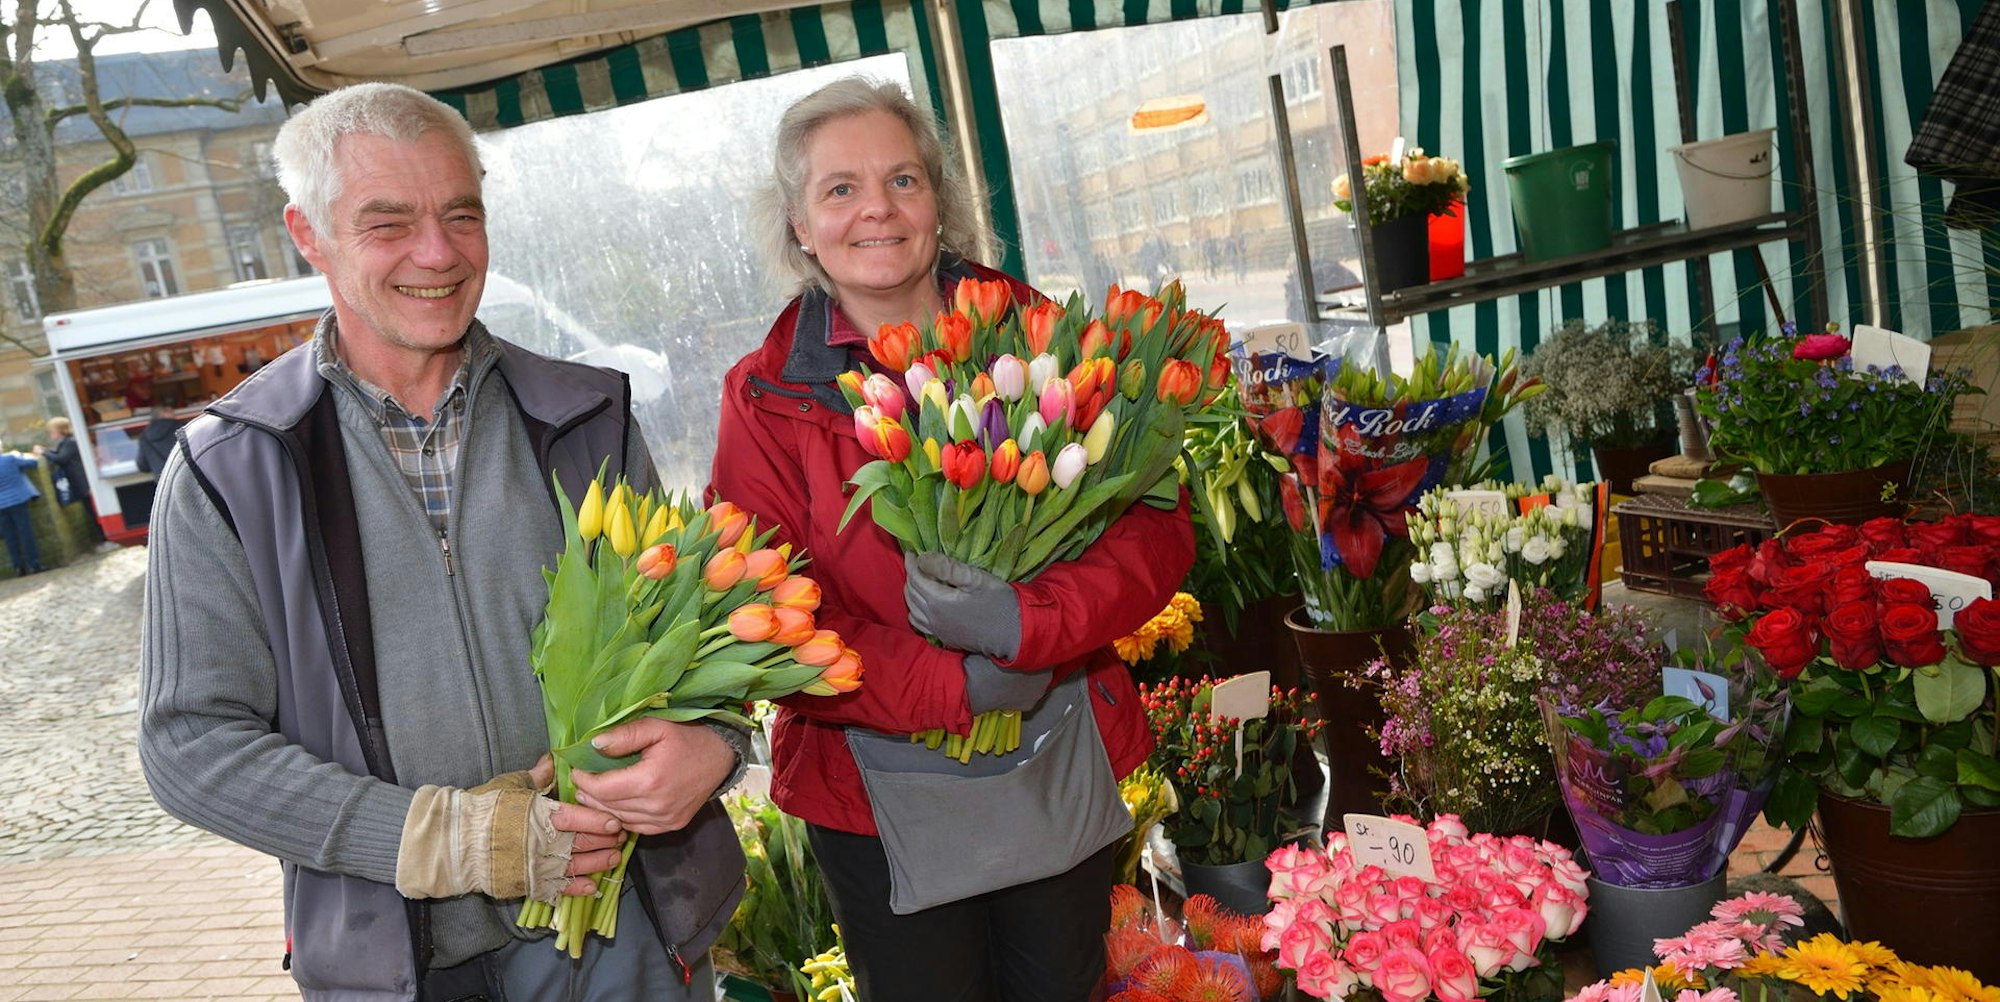 Tanja und Ralf Klein verkaufen Blumen auf dem Wochenmarkt. Das ist noch gestattet.